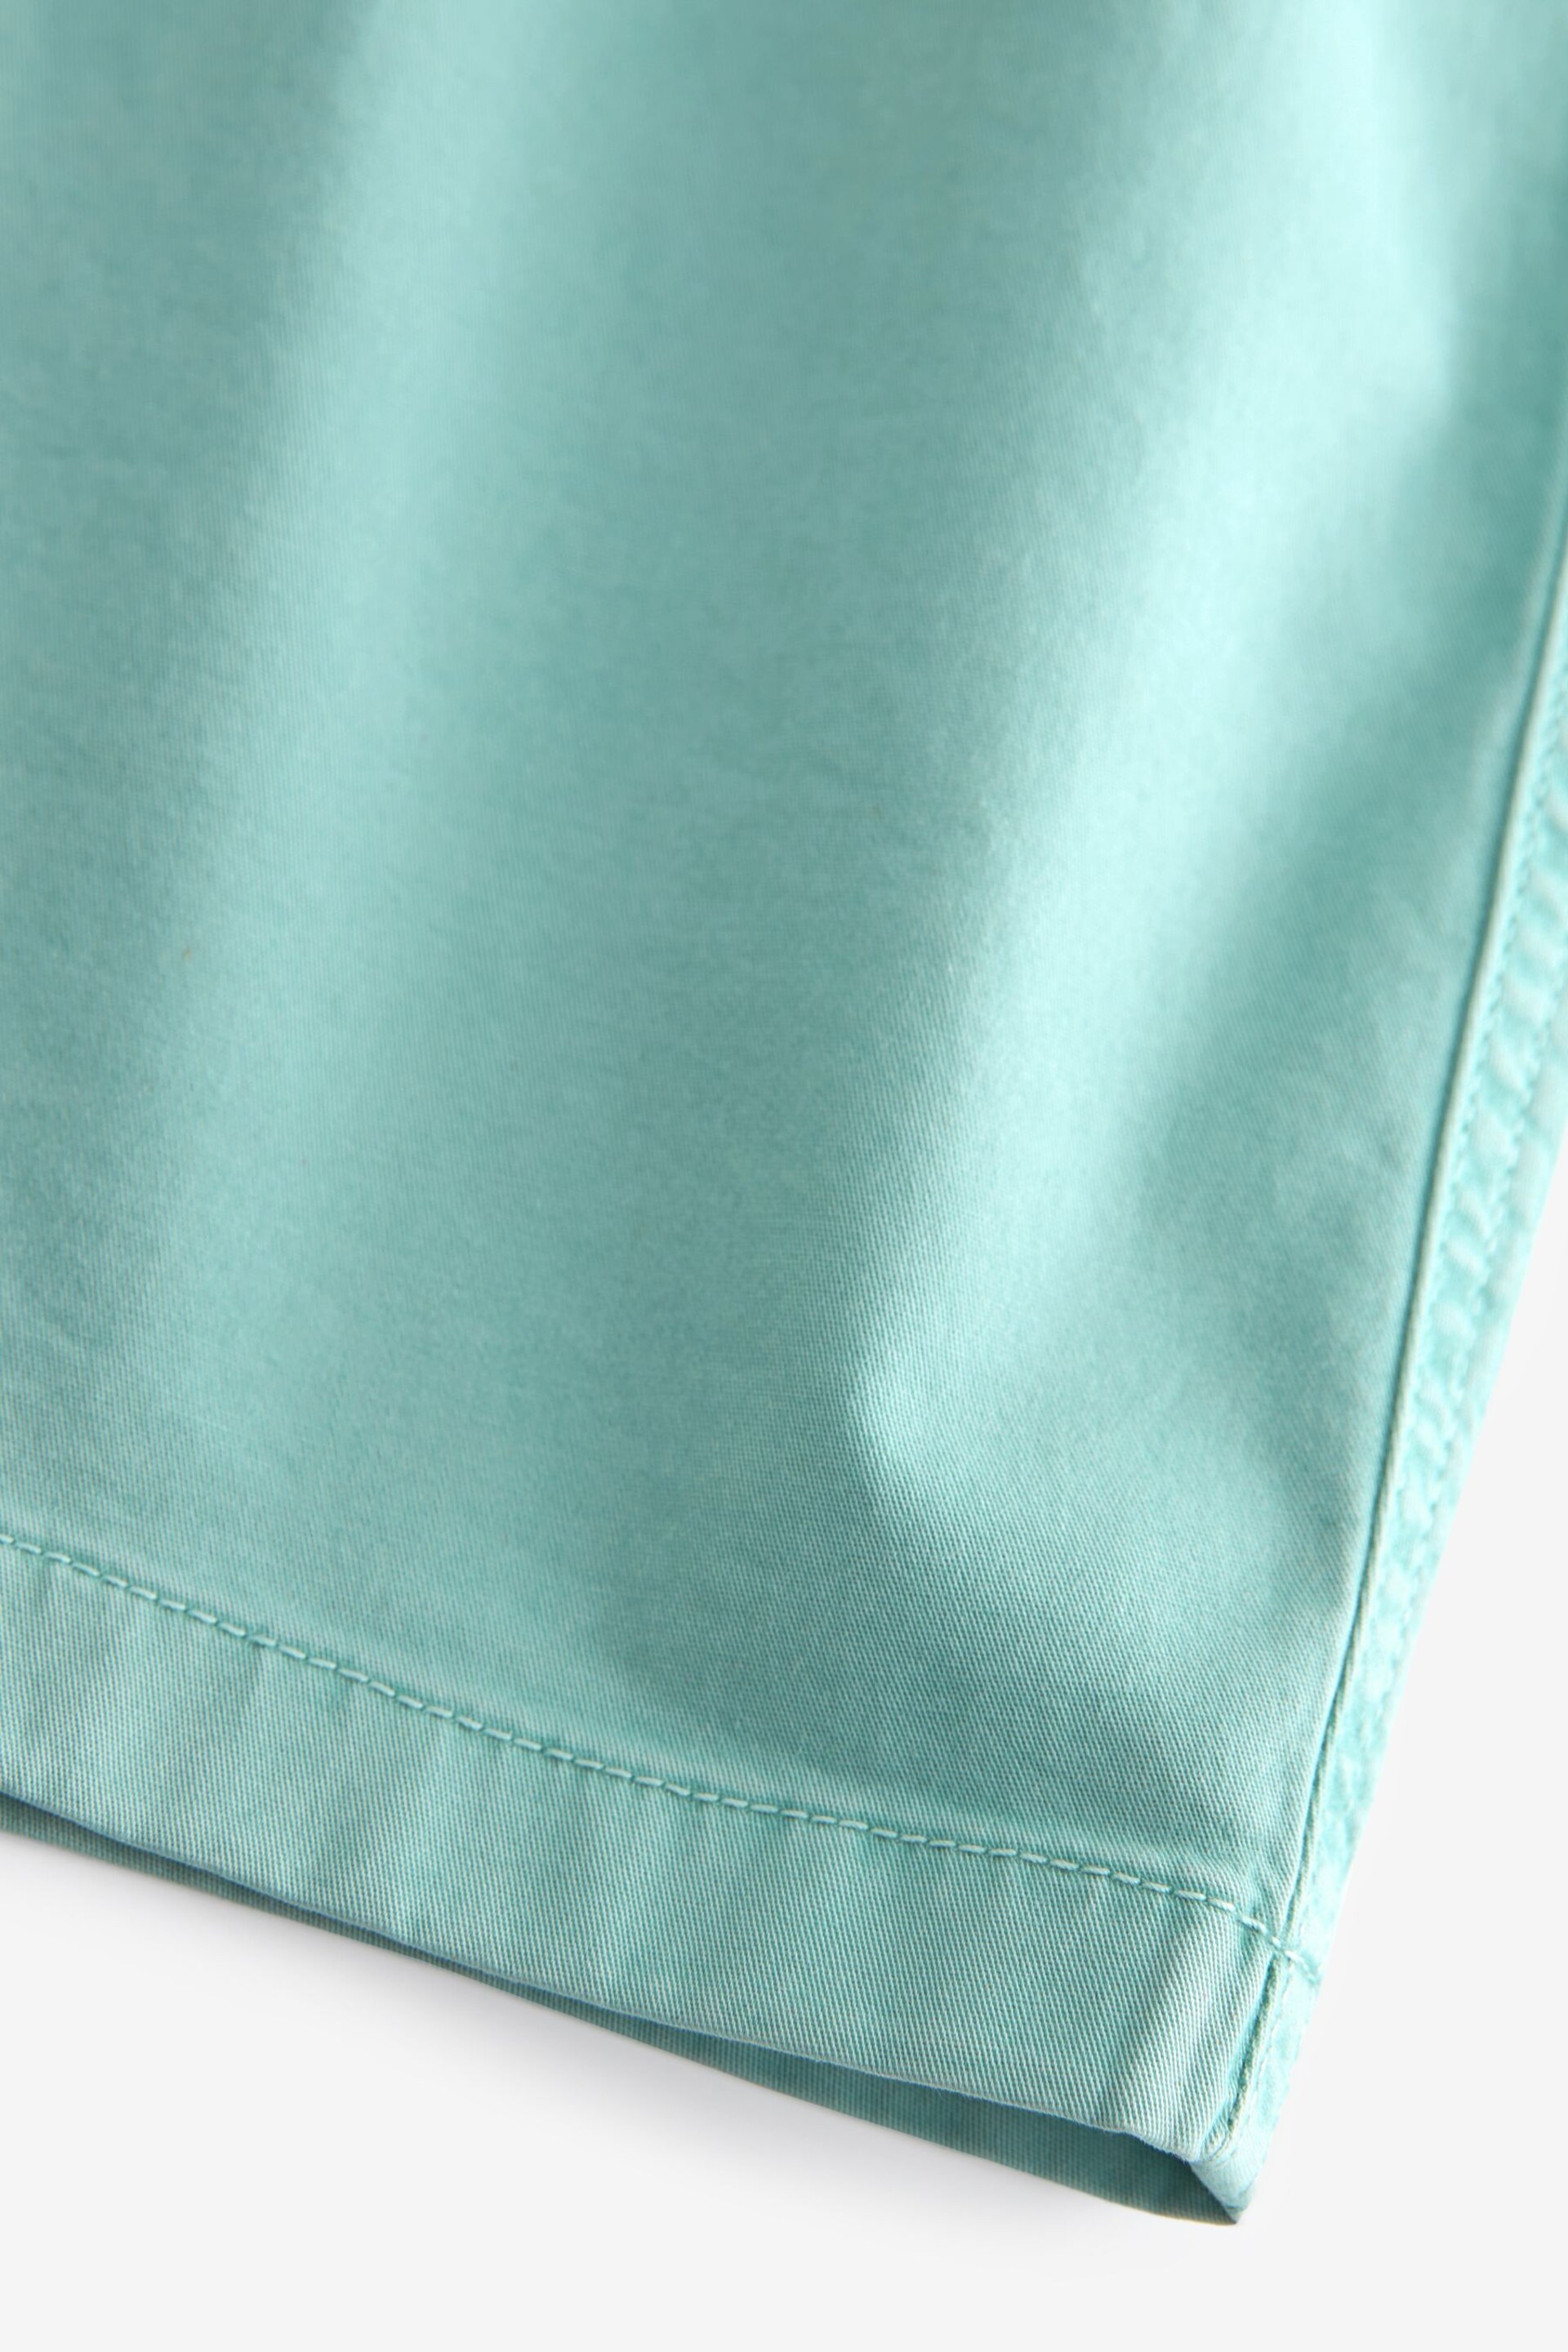 Aqua Blue Washed Cotton Elasticated Waist Shorts - Image 8 of 10